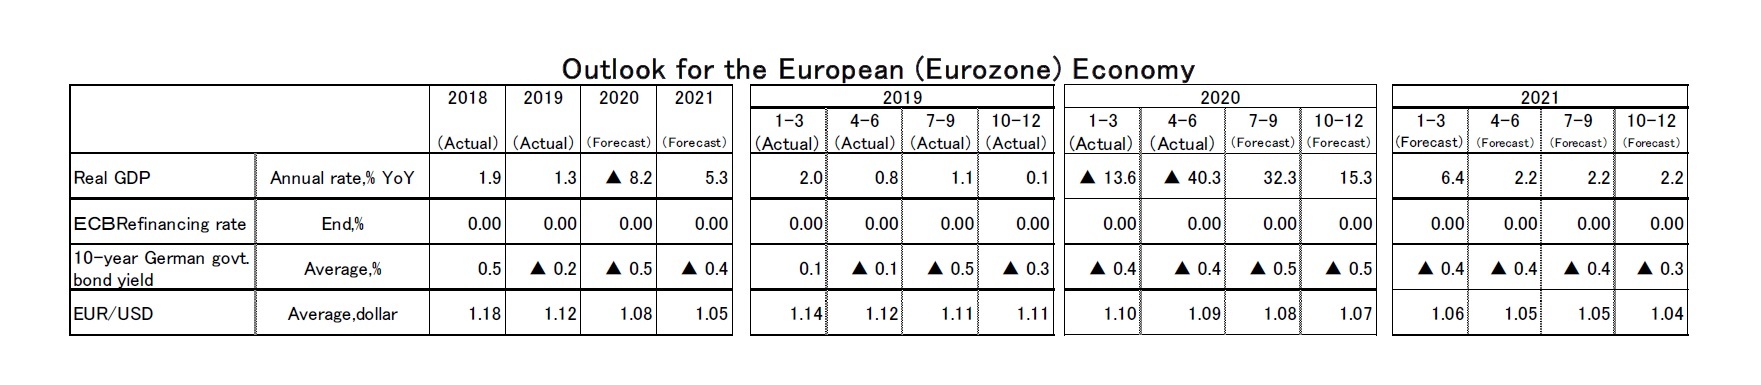 Outlook for the European(Eurozone) Economy